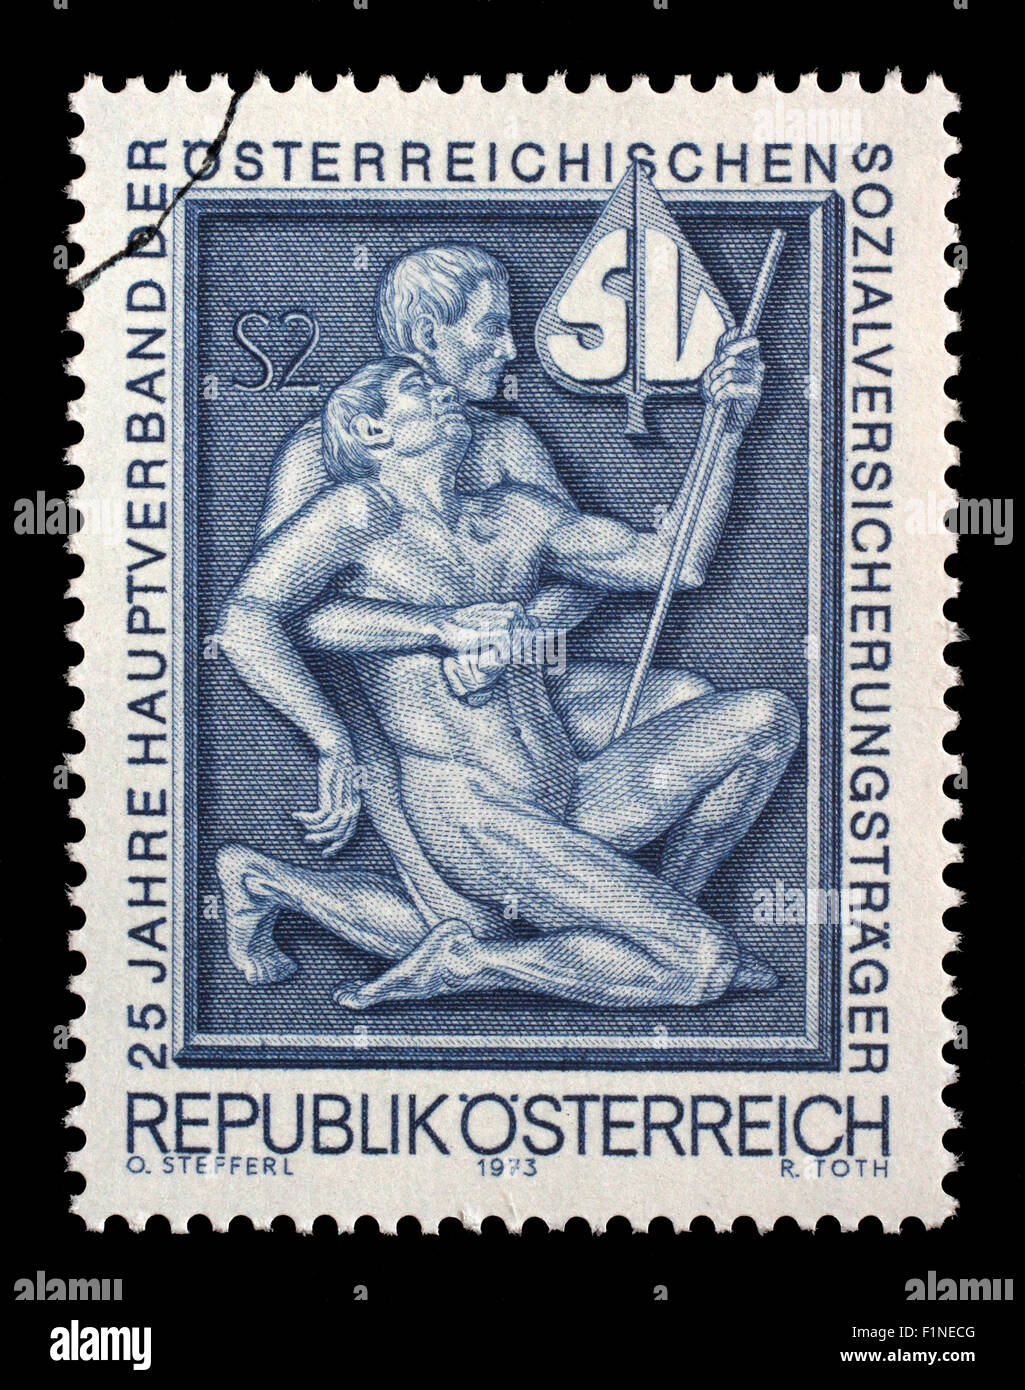 Briefmarke gedruckt durch Österreich, zeigt Symbolik für Hilfe und Unterstützung, ca. 1973 Stockfoto